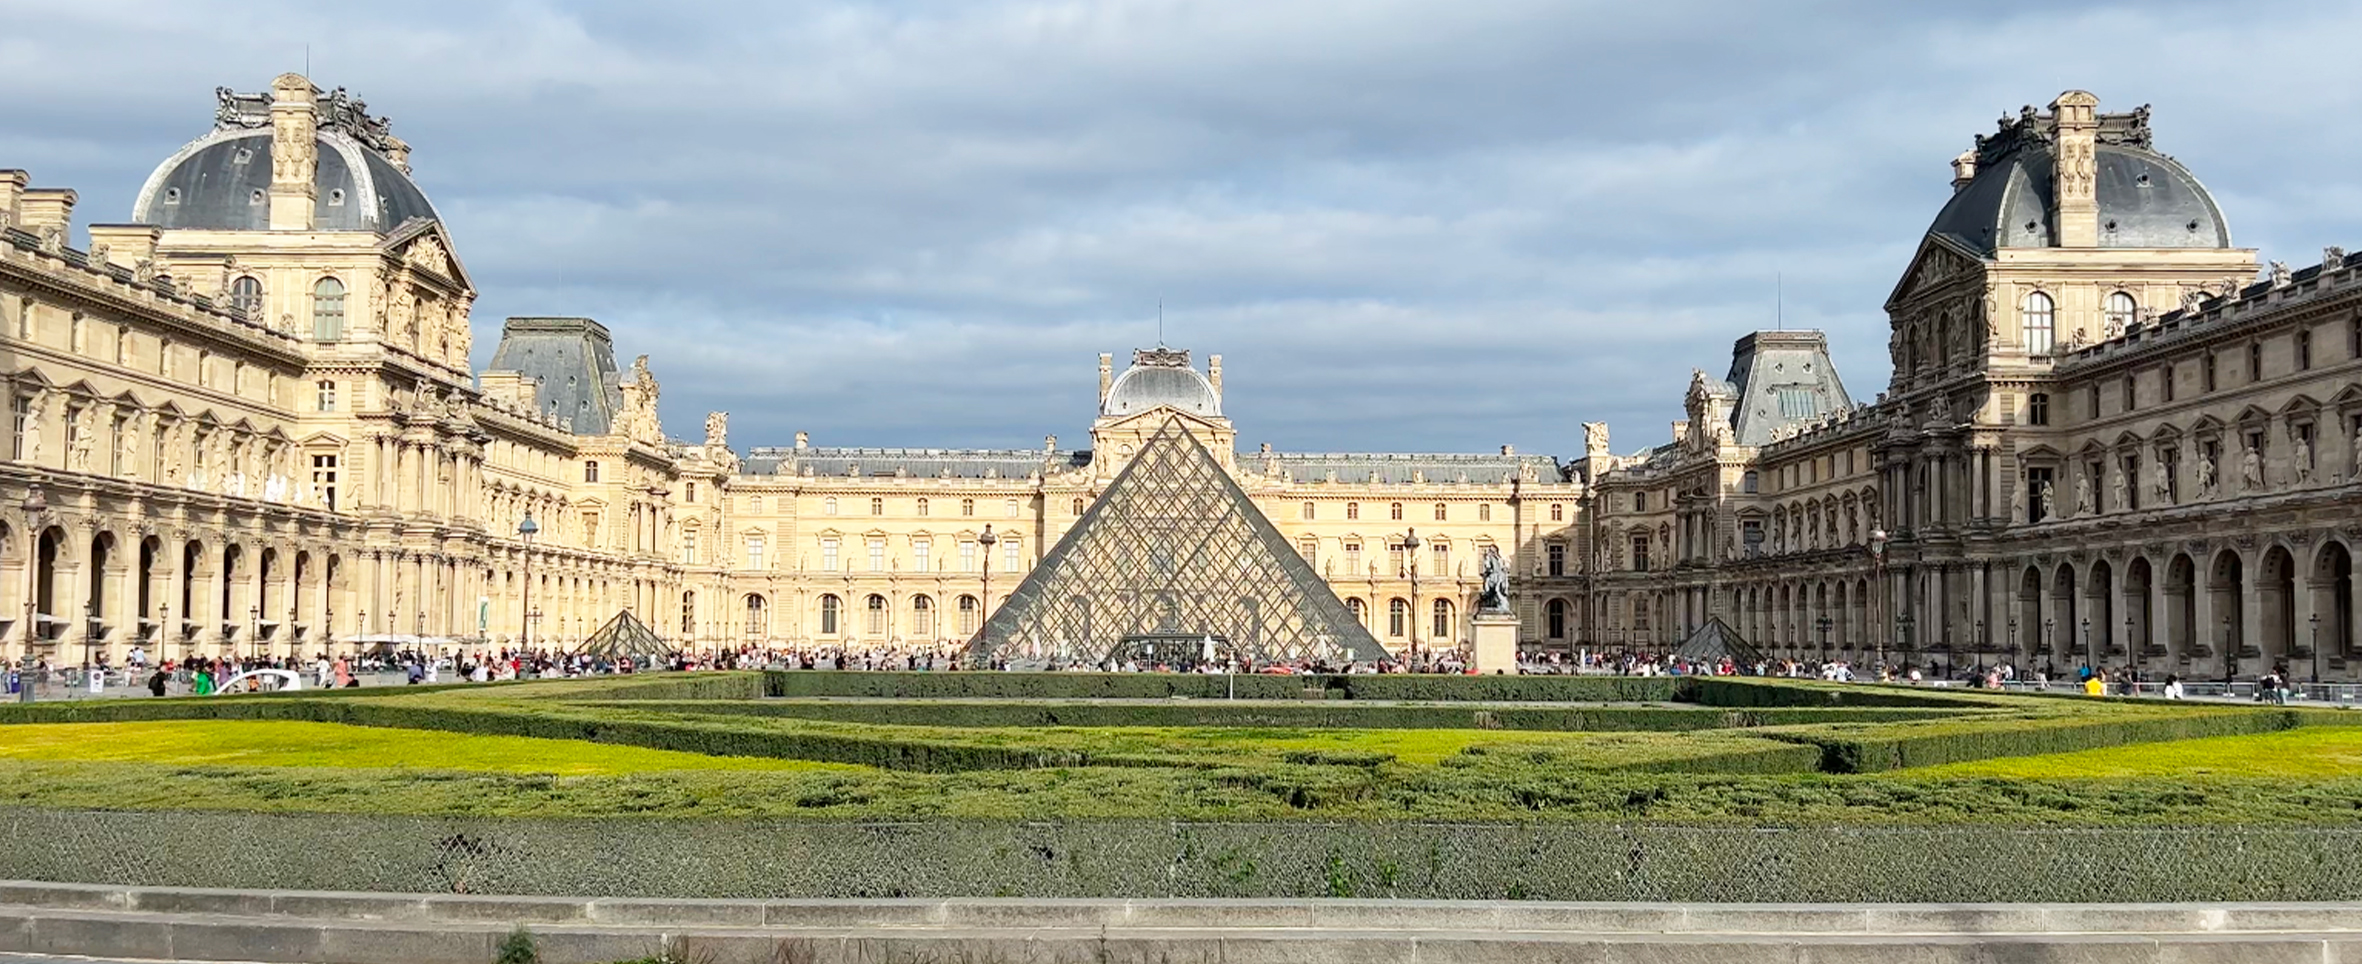 Museo del Louvre de París en diferentes ángulos y detalles